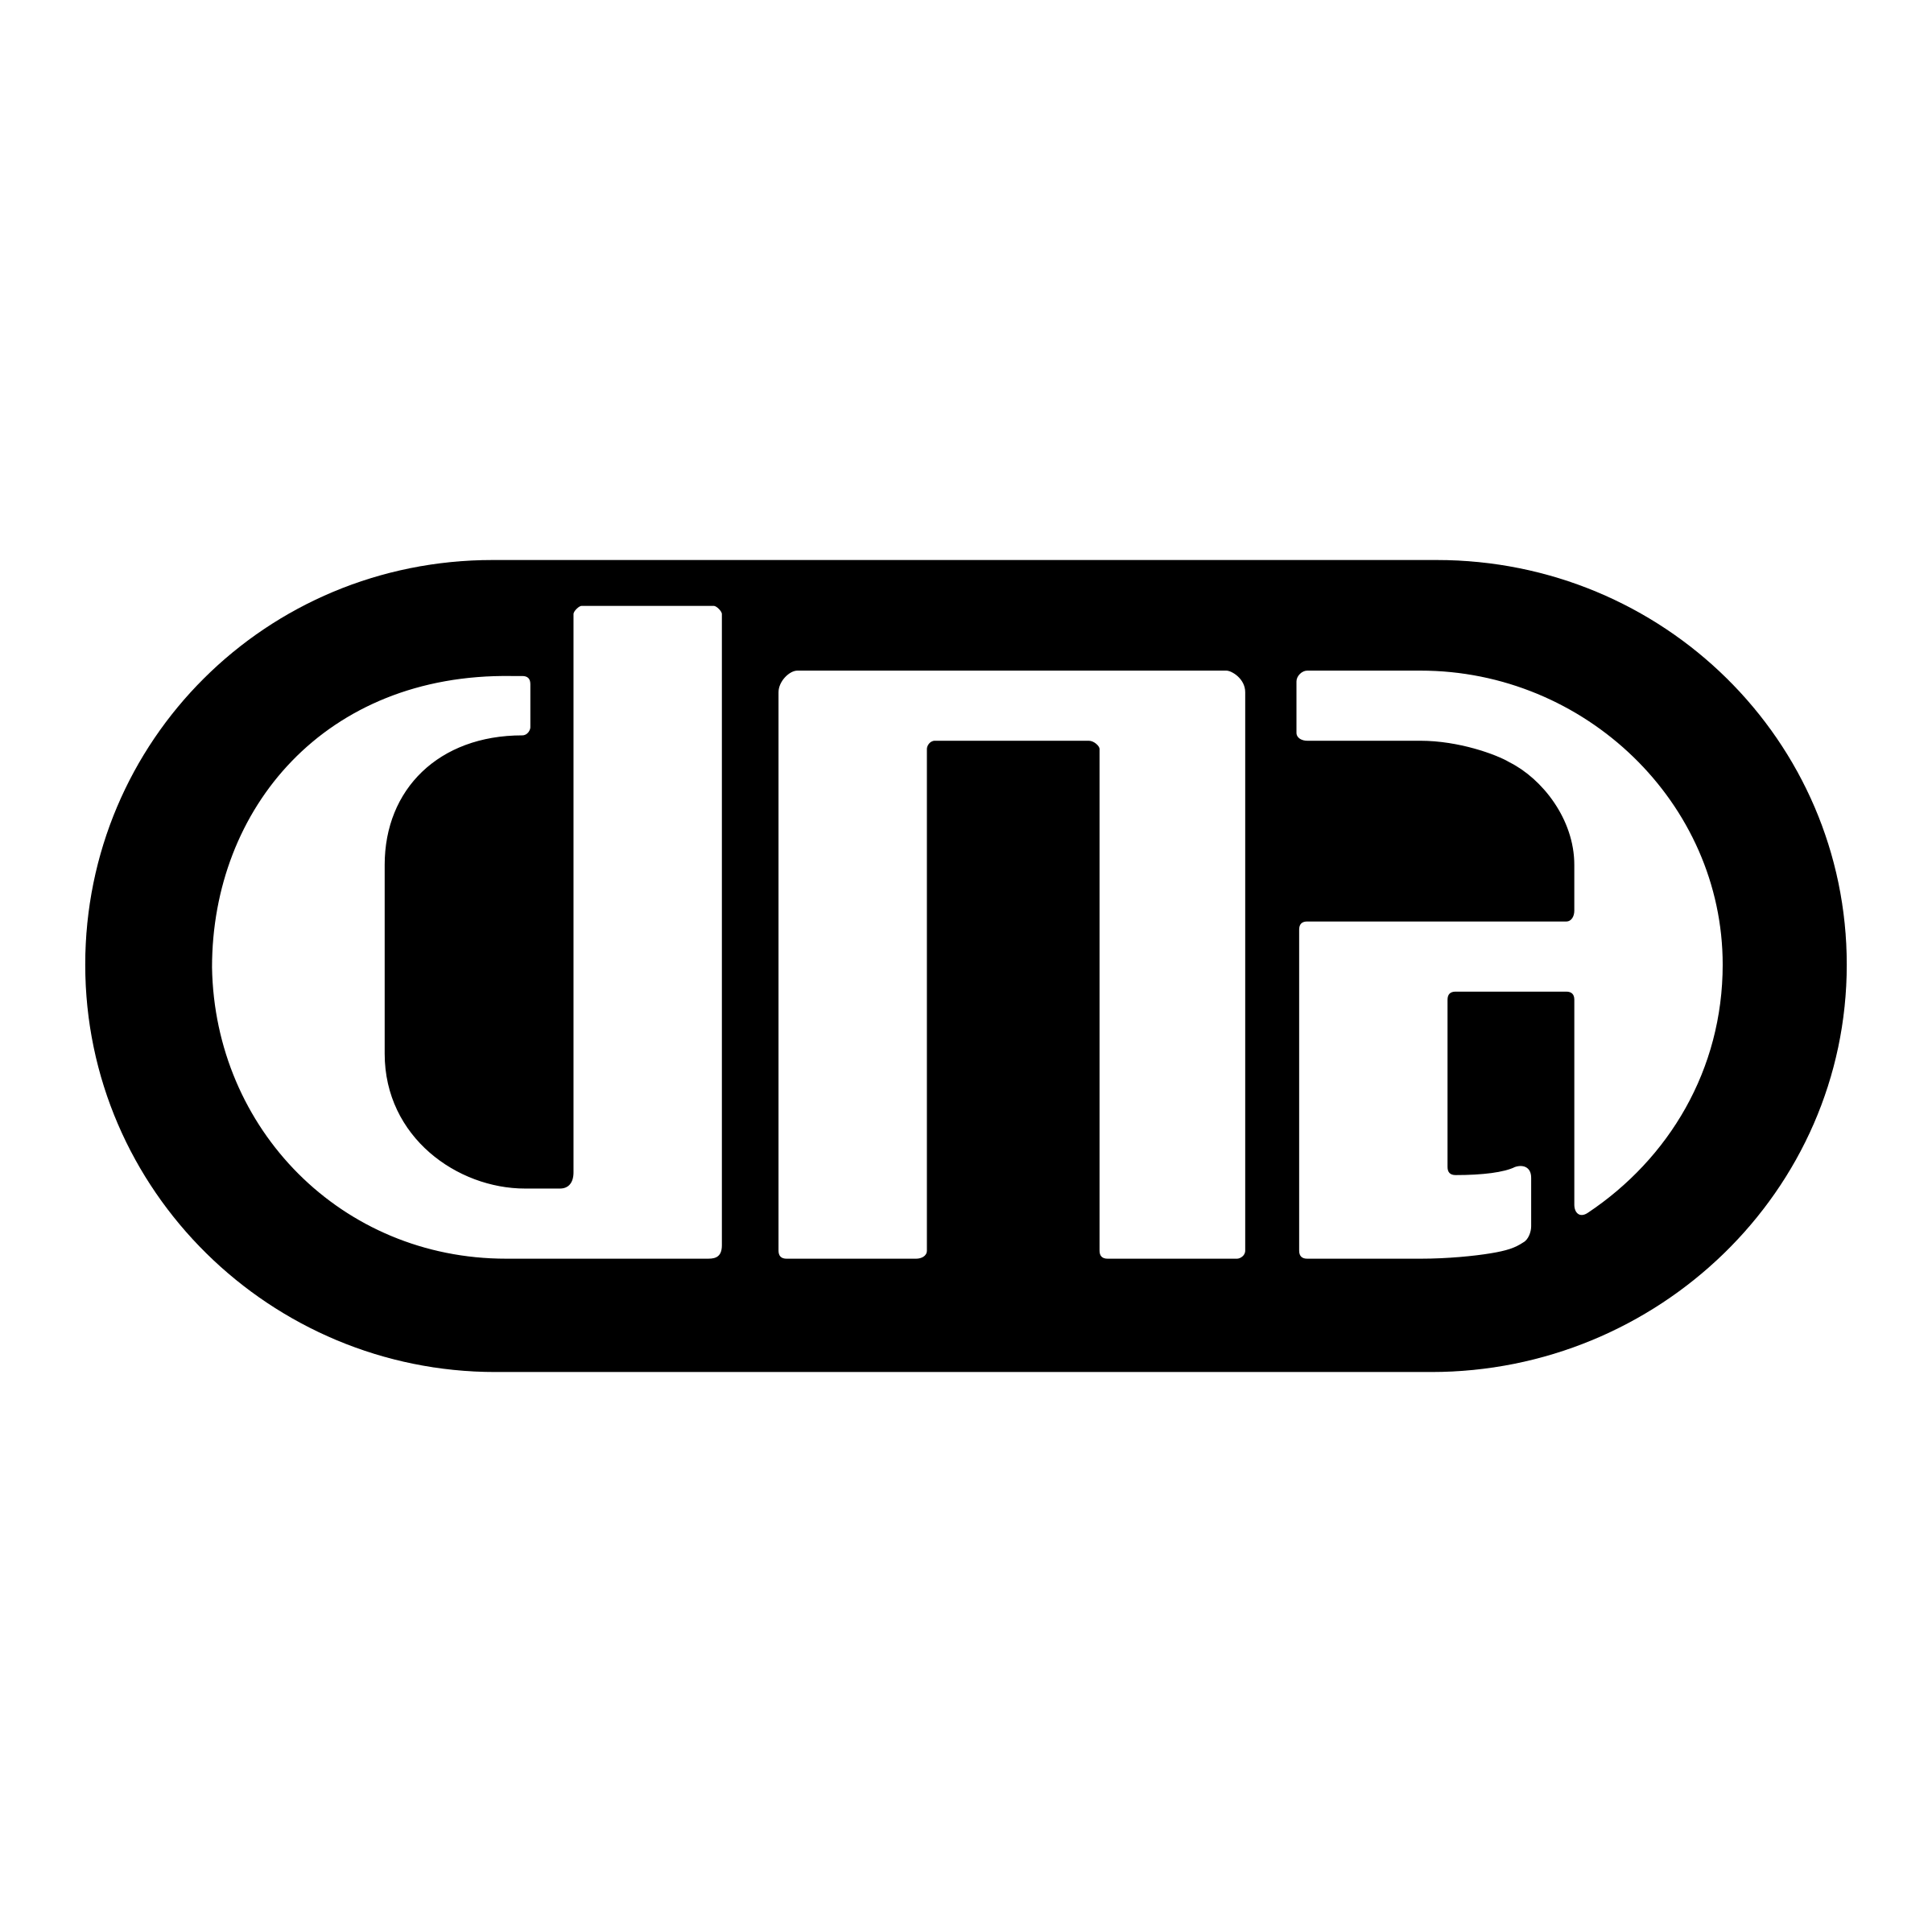 DNA Logo - DNA Logo PNG Transparent & SVG Vector - Freebie Supply